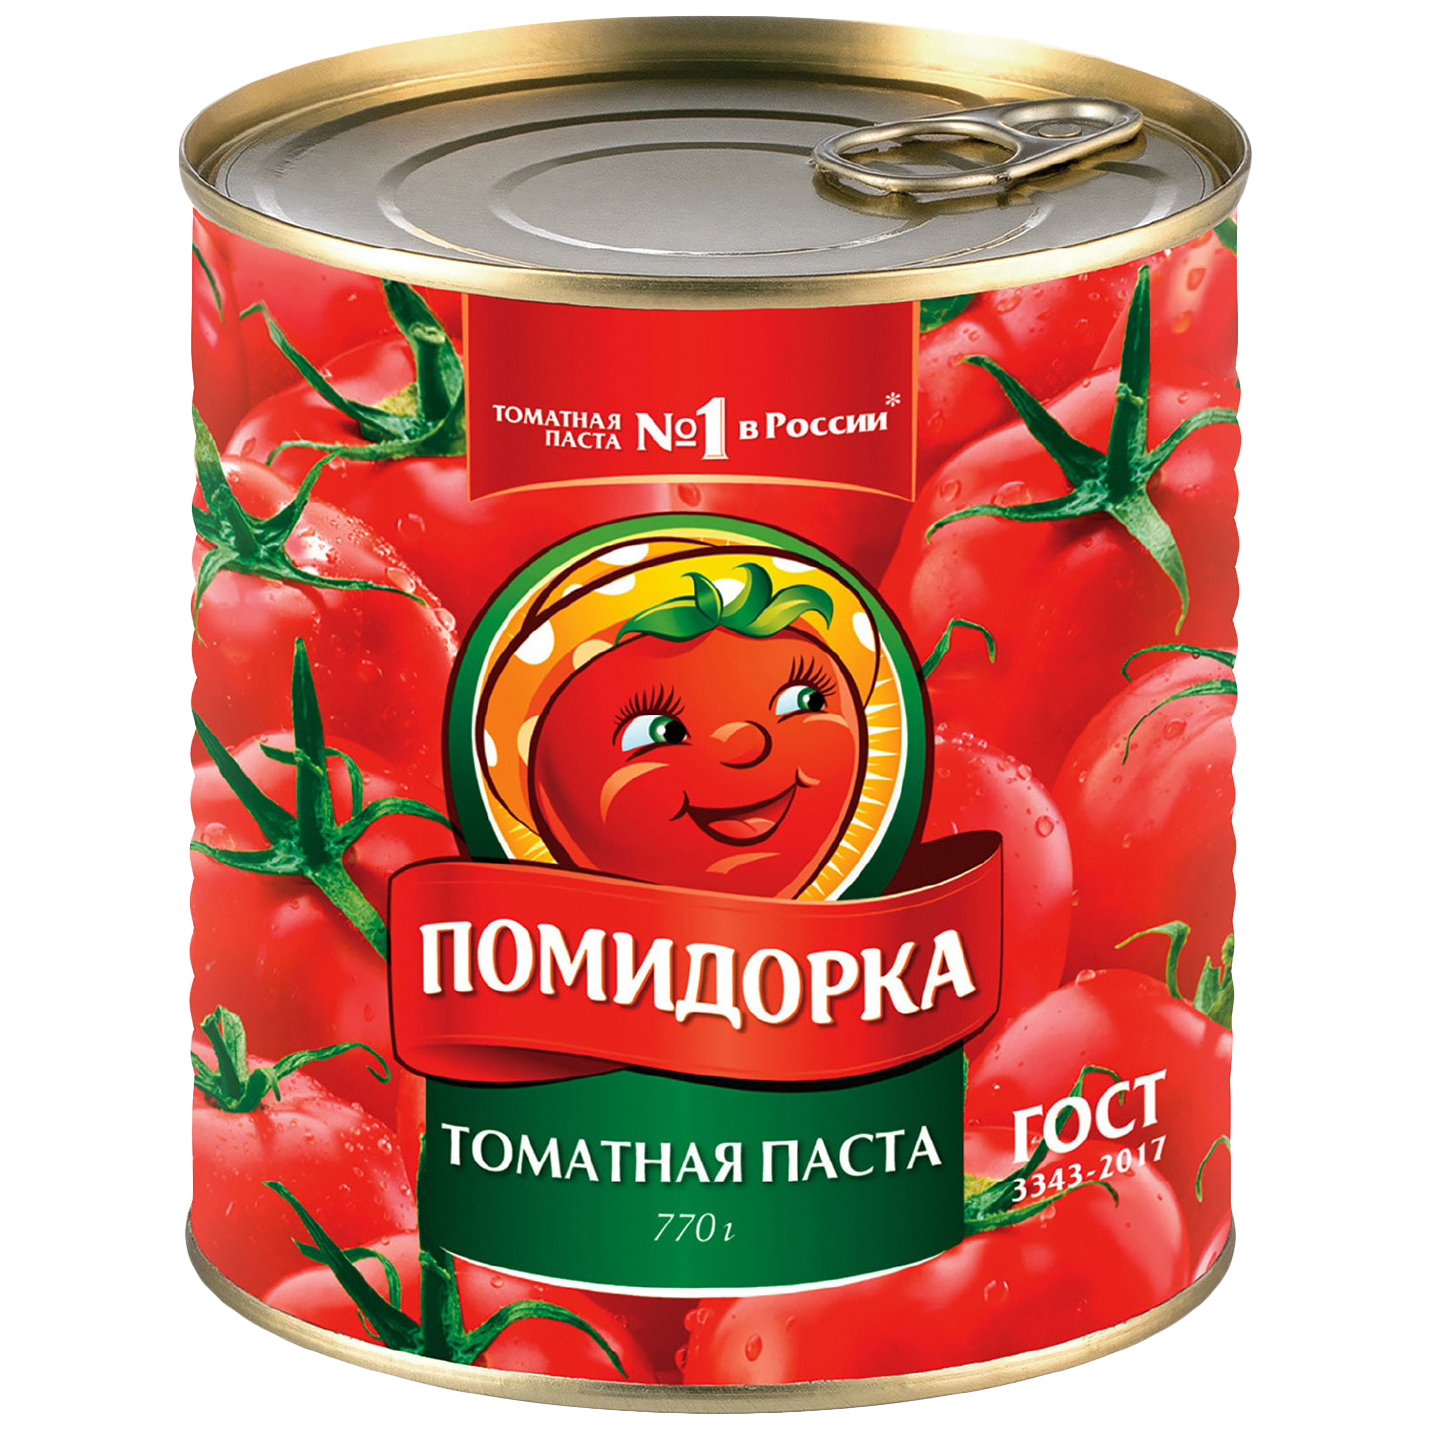 Паста томатная Помидорка ГОСТ, 25-28%, 770 г